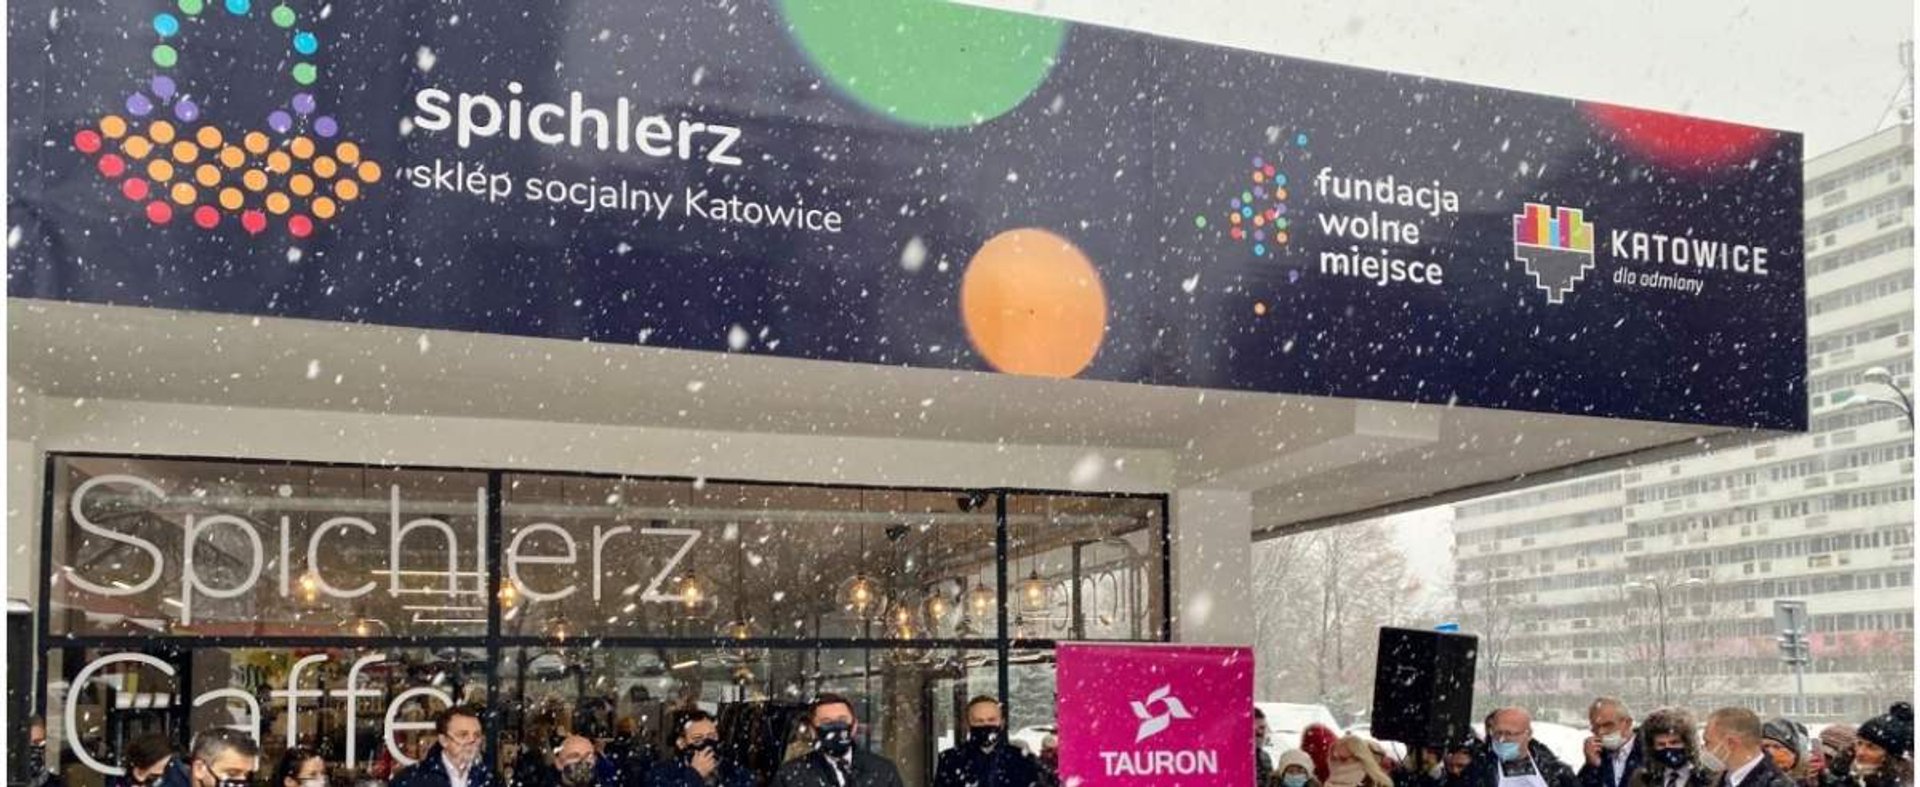 Spichlerz - pierwszy w Polsce sklep socjalny już działa